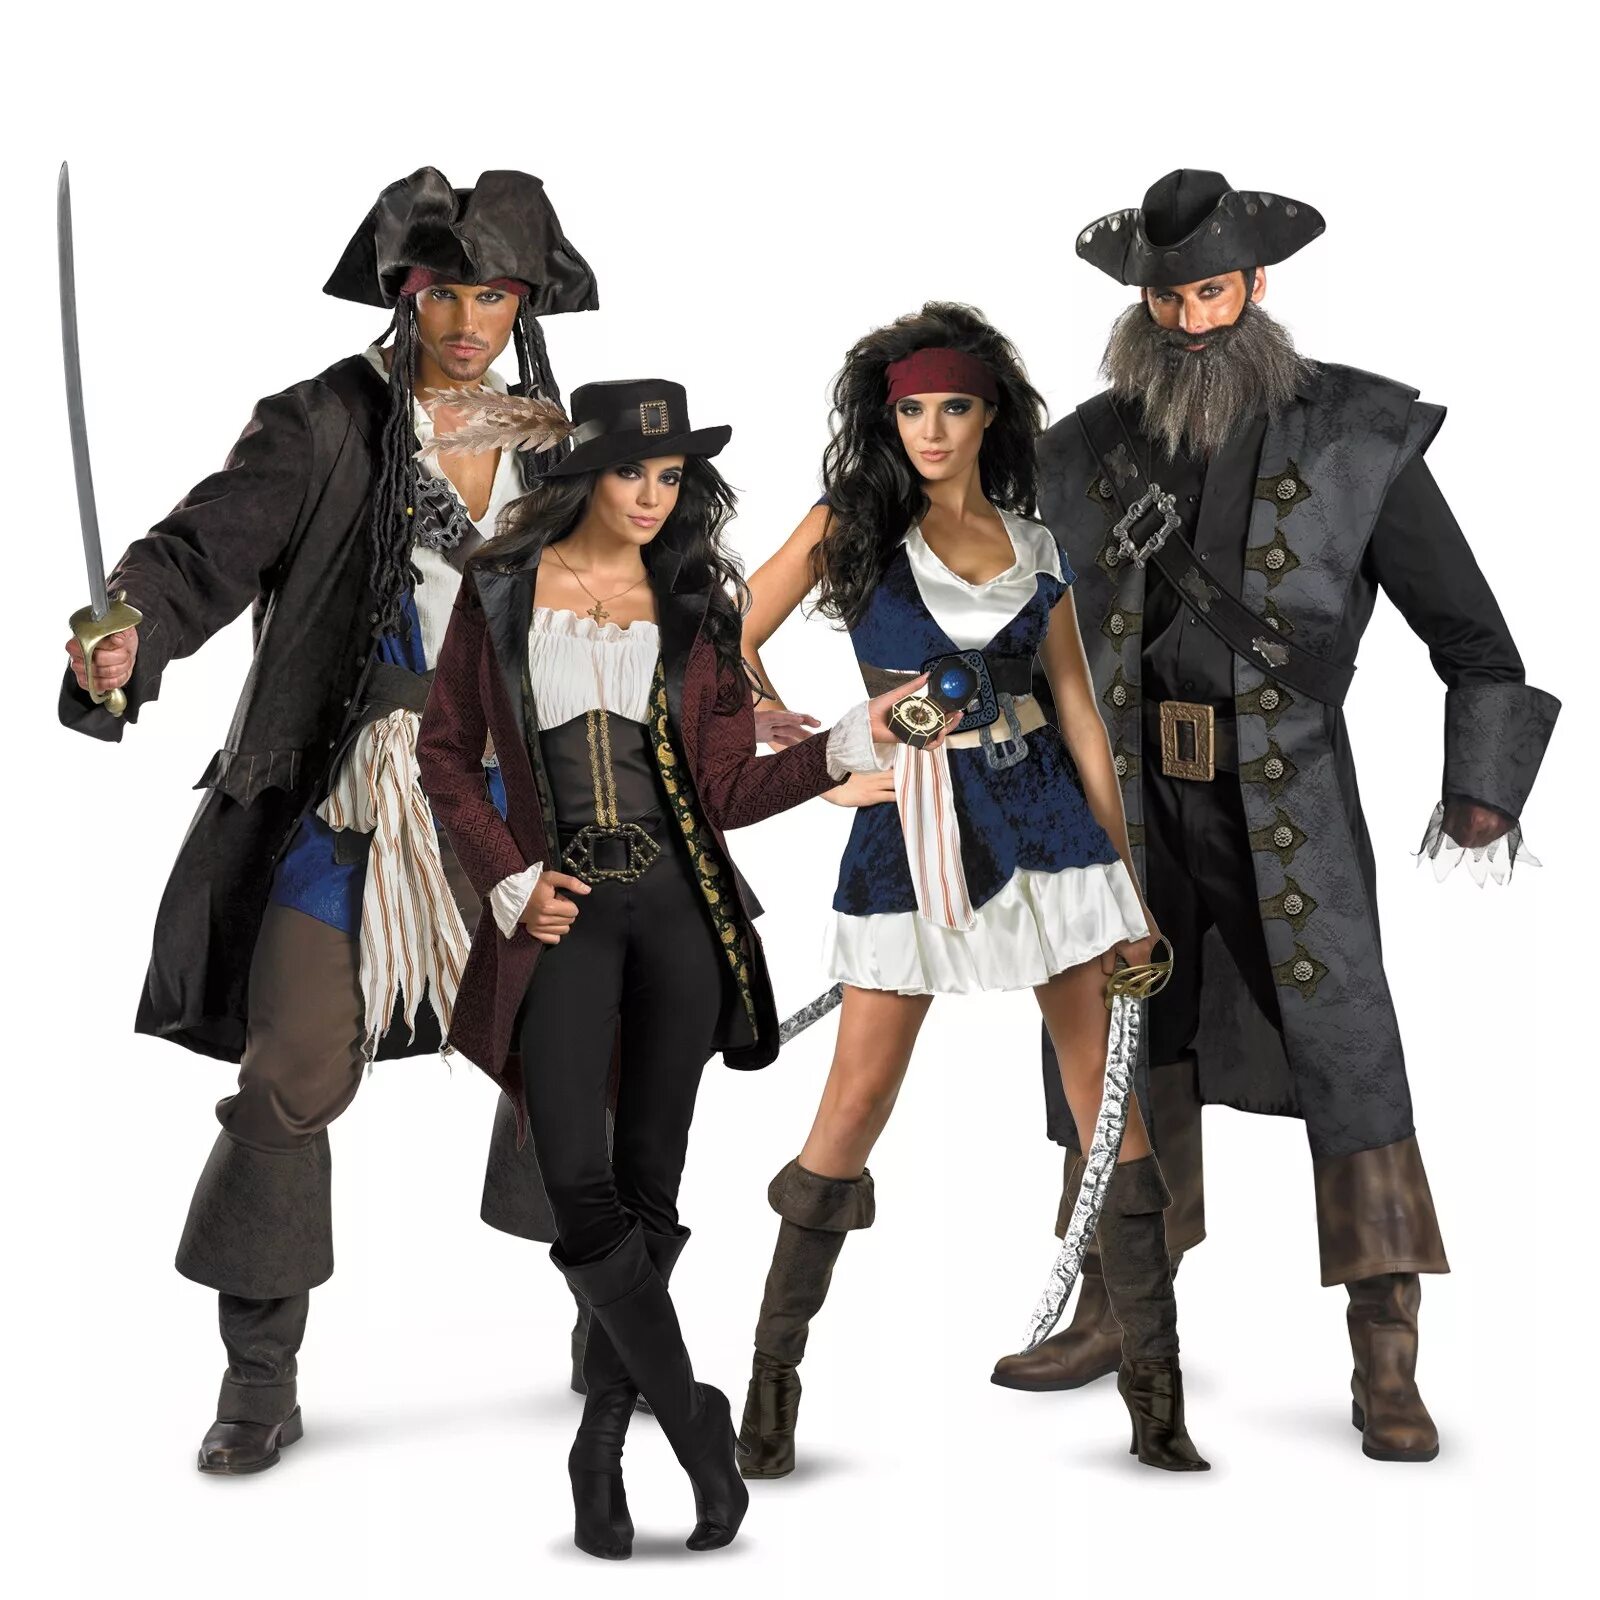 Где нарядные пираты. Пираты Карибского моря костюмы пиратов. Пираты Карибского моря костюмы для детей. Костюм пиратки из пиратов Карибского моря. Костюмированная вечеринка пираты.